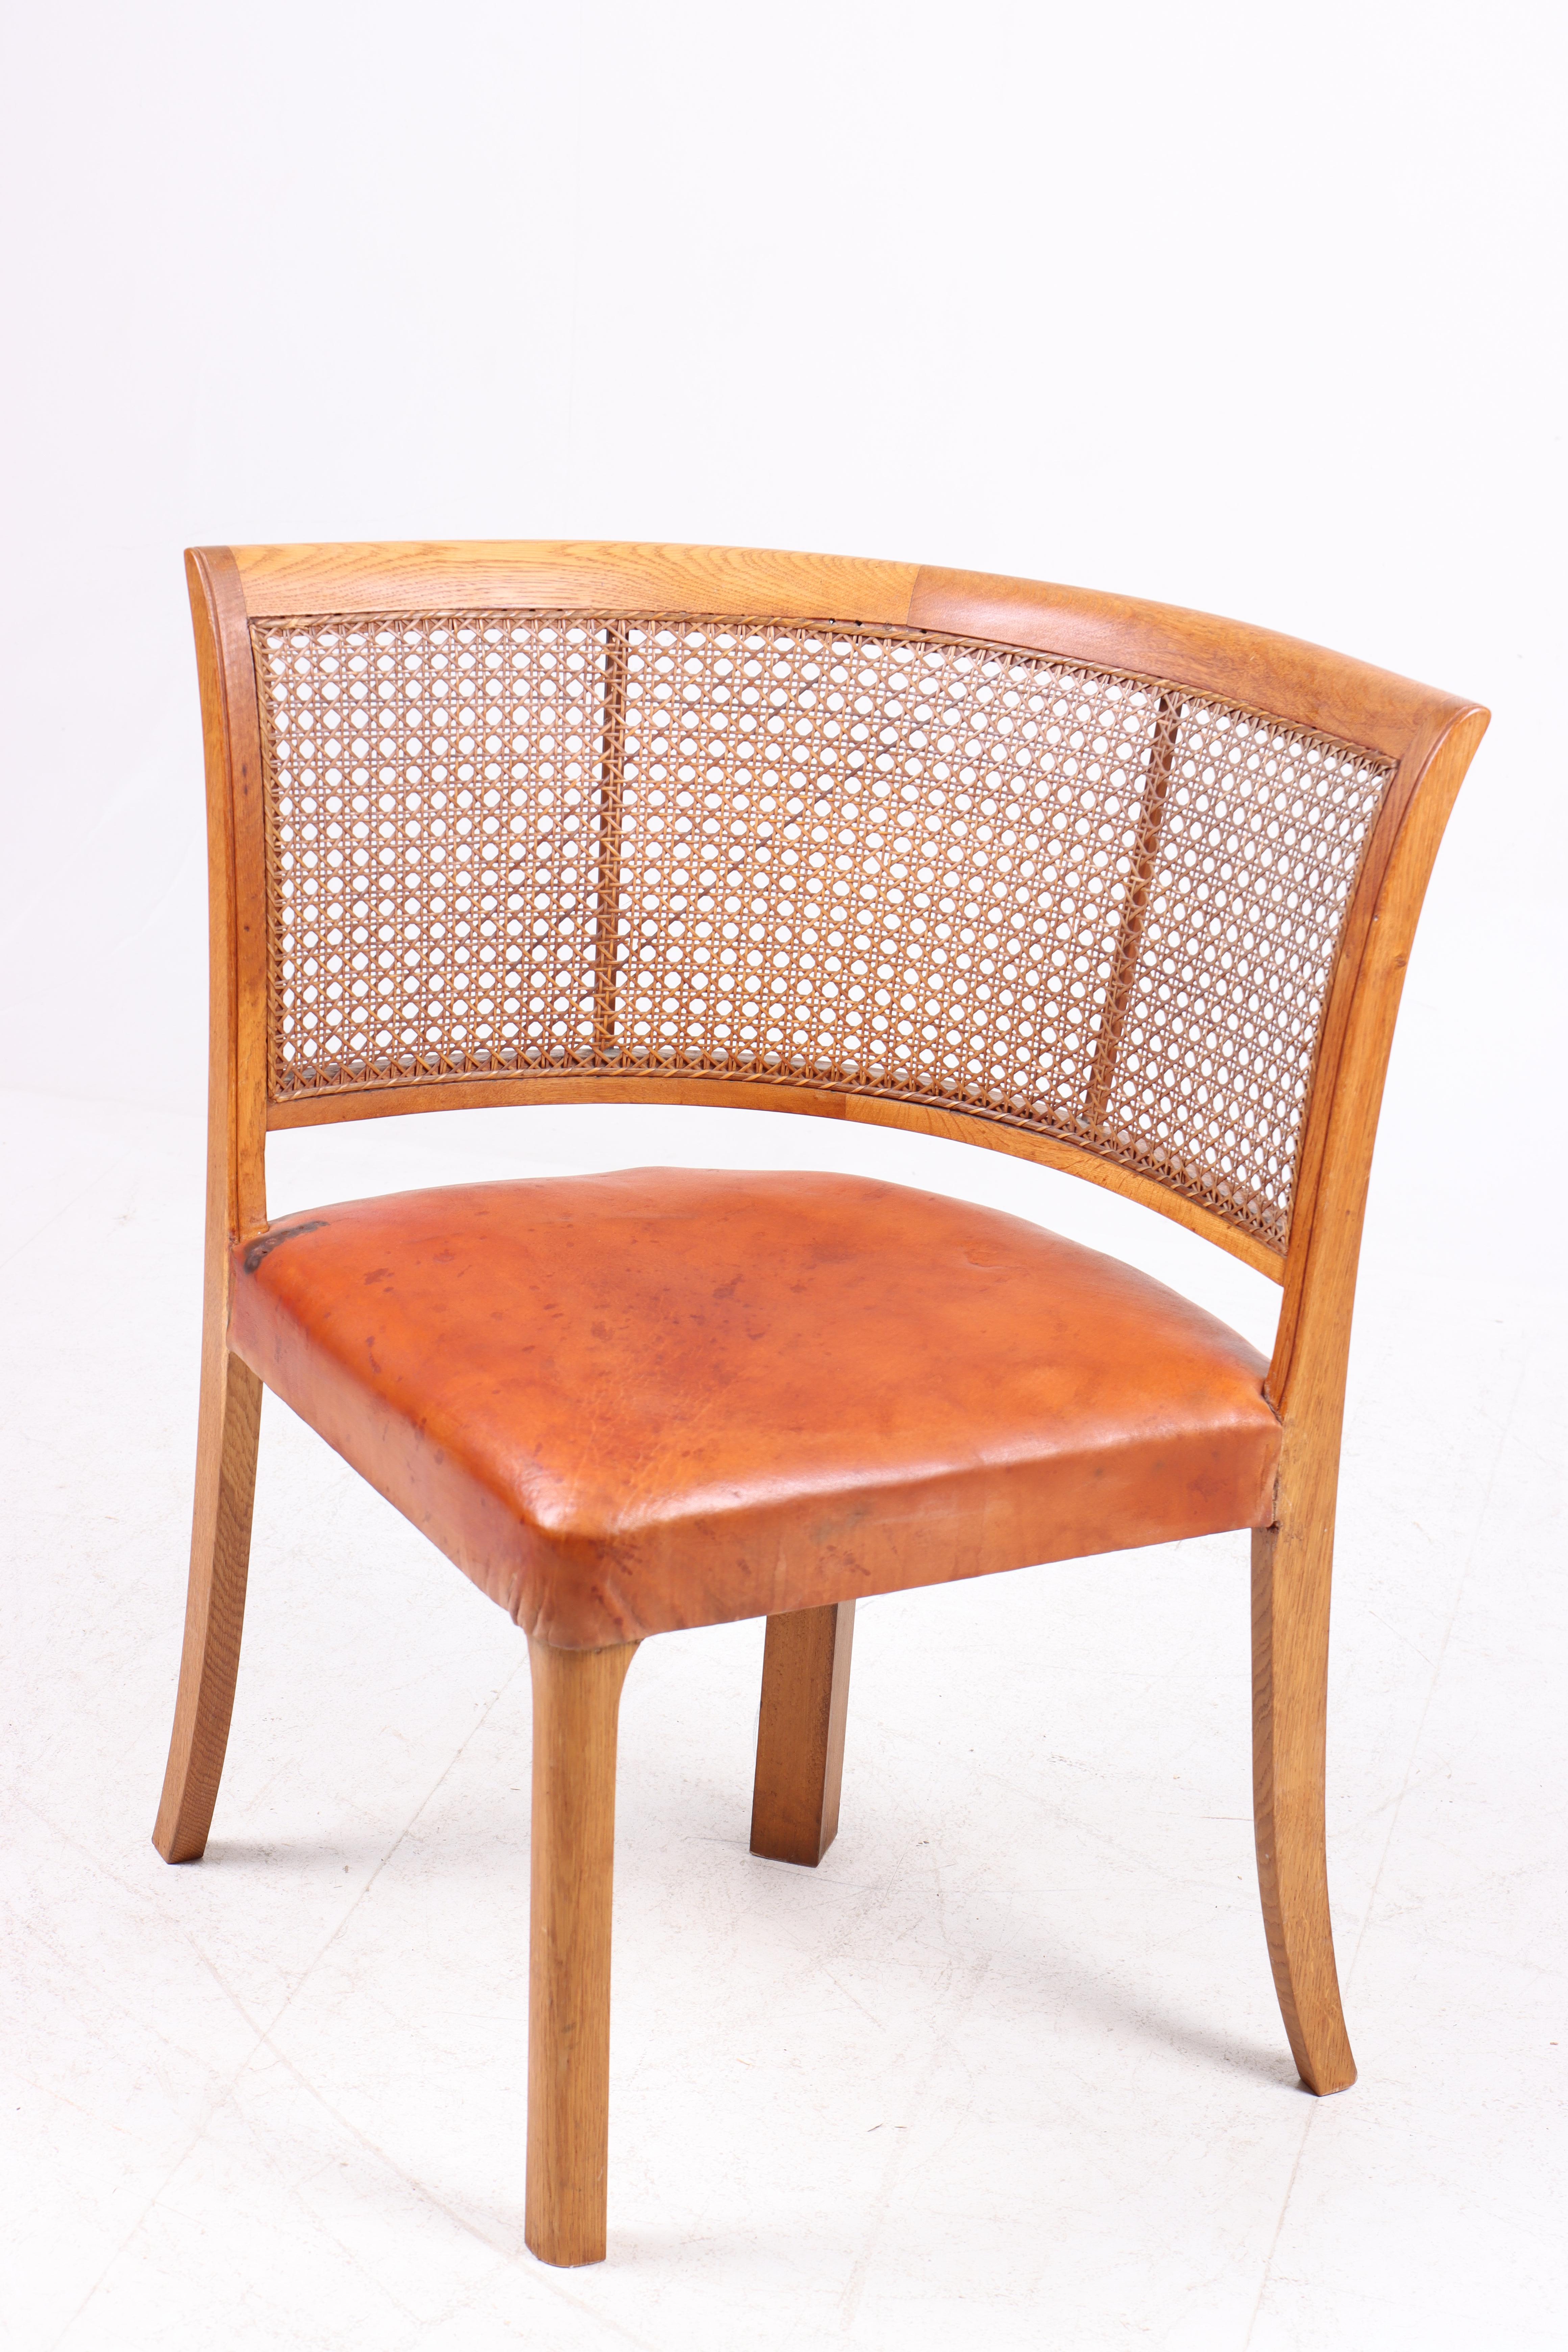 Seltener Beistellstuhl, entworfen und hergestellt von einem dänischen Tischler, sehr guter Zustand.